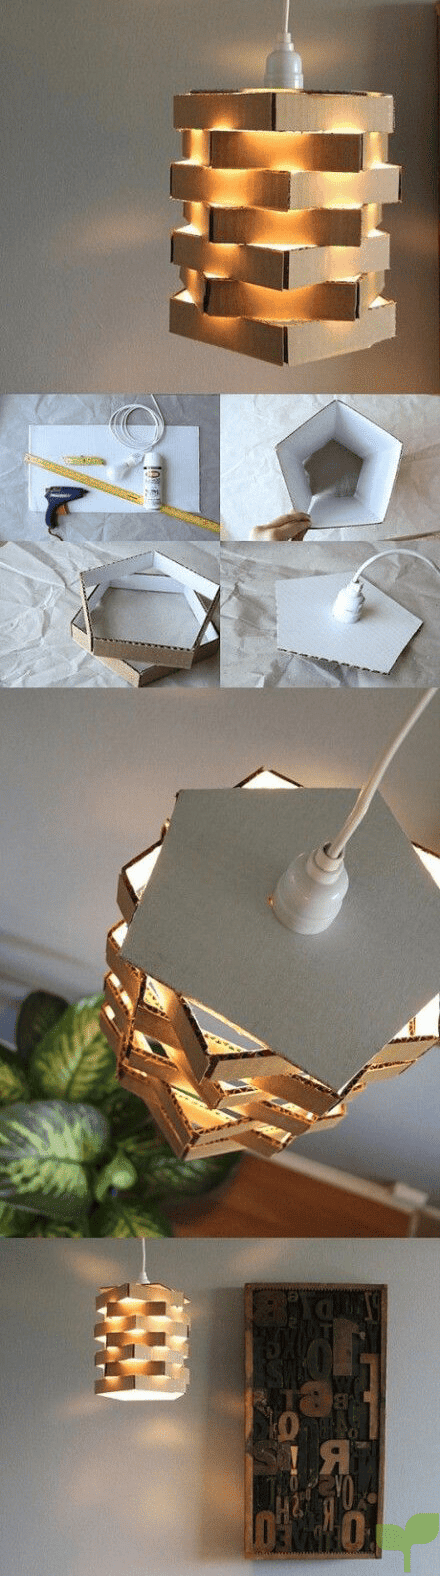 lamparas decorativas con cajas de carton 1